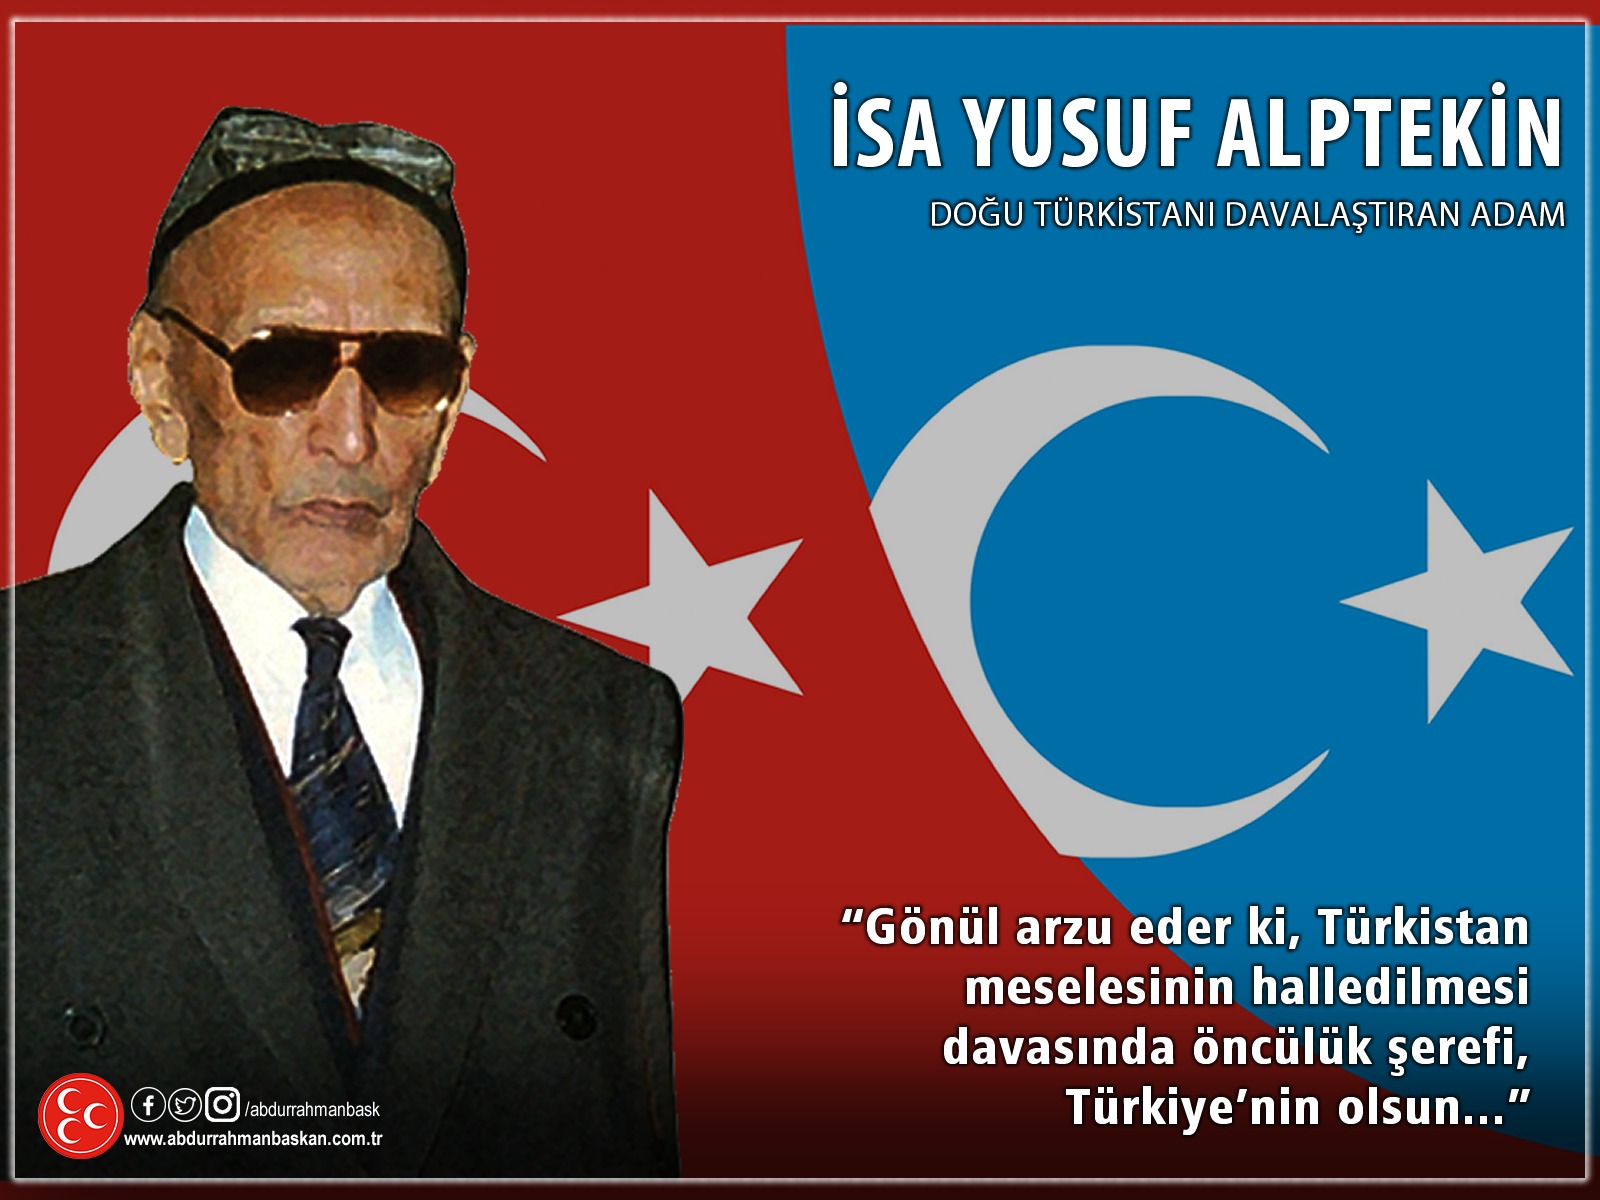 Abdurrahman Başkan on Twitter: "Doğu Türkistan'ı davalaştıran adam İsa Yusuf Alptekin'i vefatının yıldönümünde rahmet ve minnetle anıyorum. #İsaYusufAlptekin https://t.co/BiS6UcqLWF" / Twitter